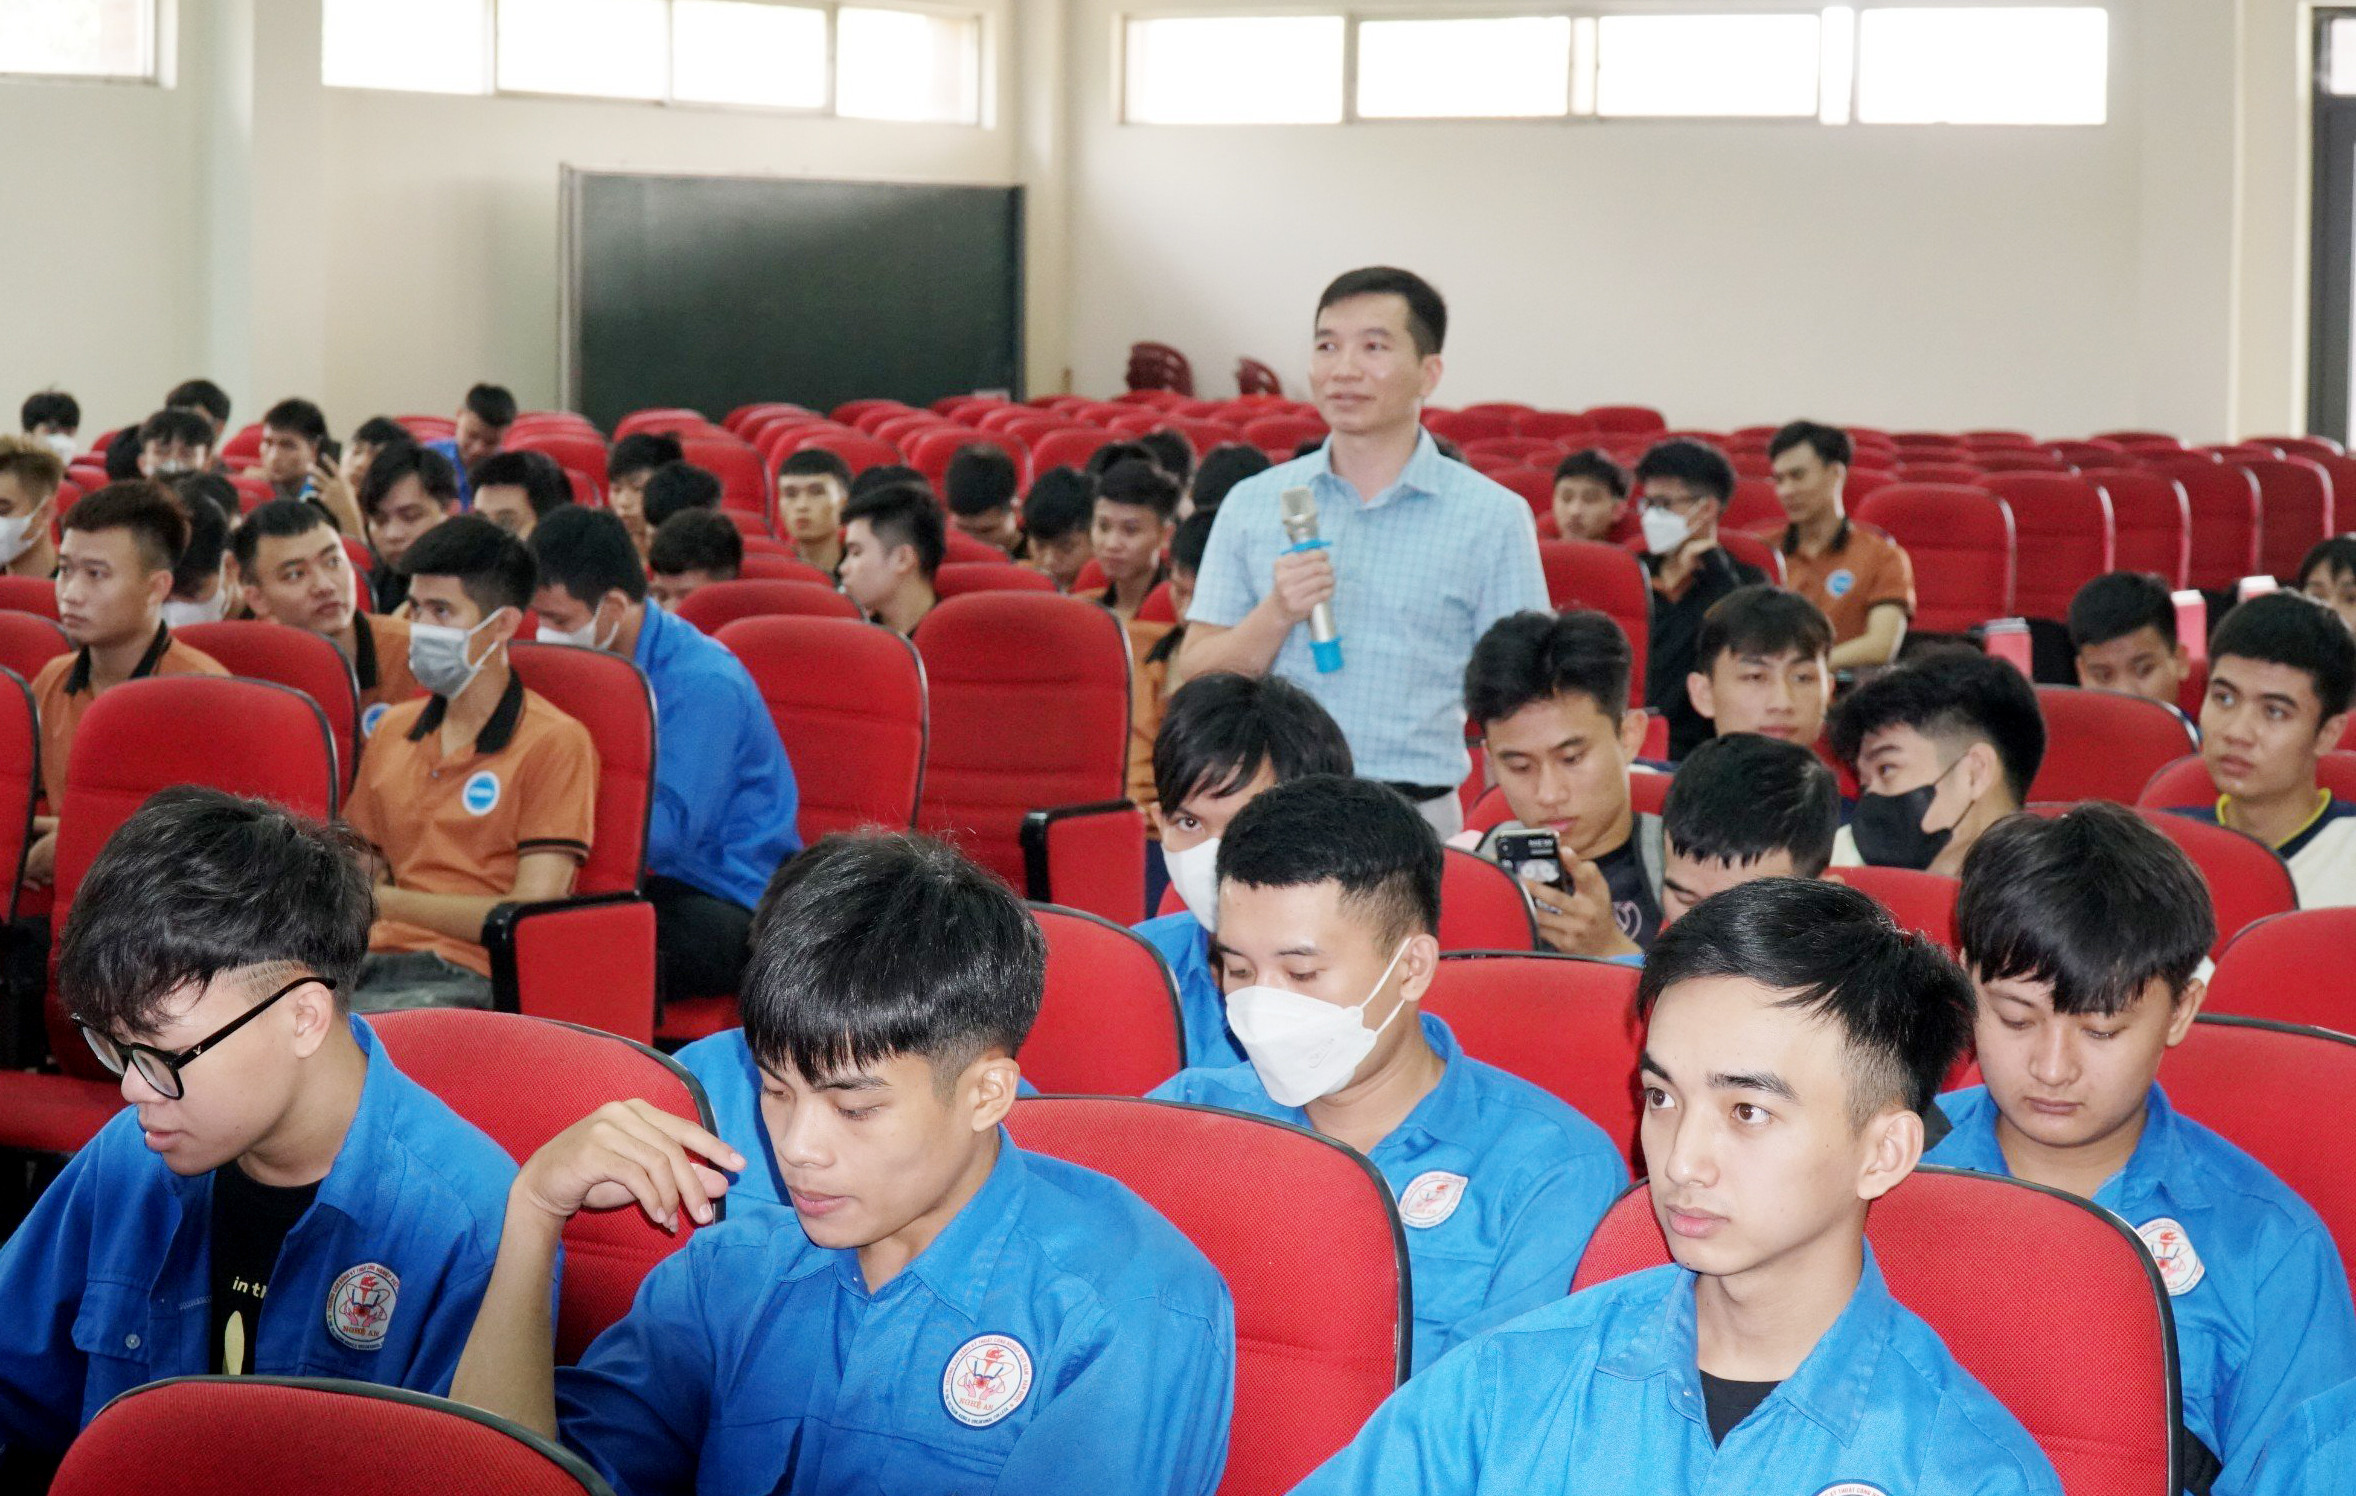 bna_Sinh viên Trường Cao đẳng kỹ thuật Việt Nam Hàn quốc tham gia buổi tuyển sinh viên thực tập.jpg